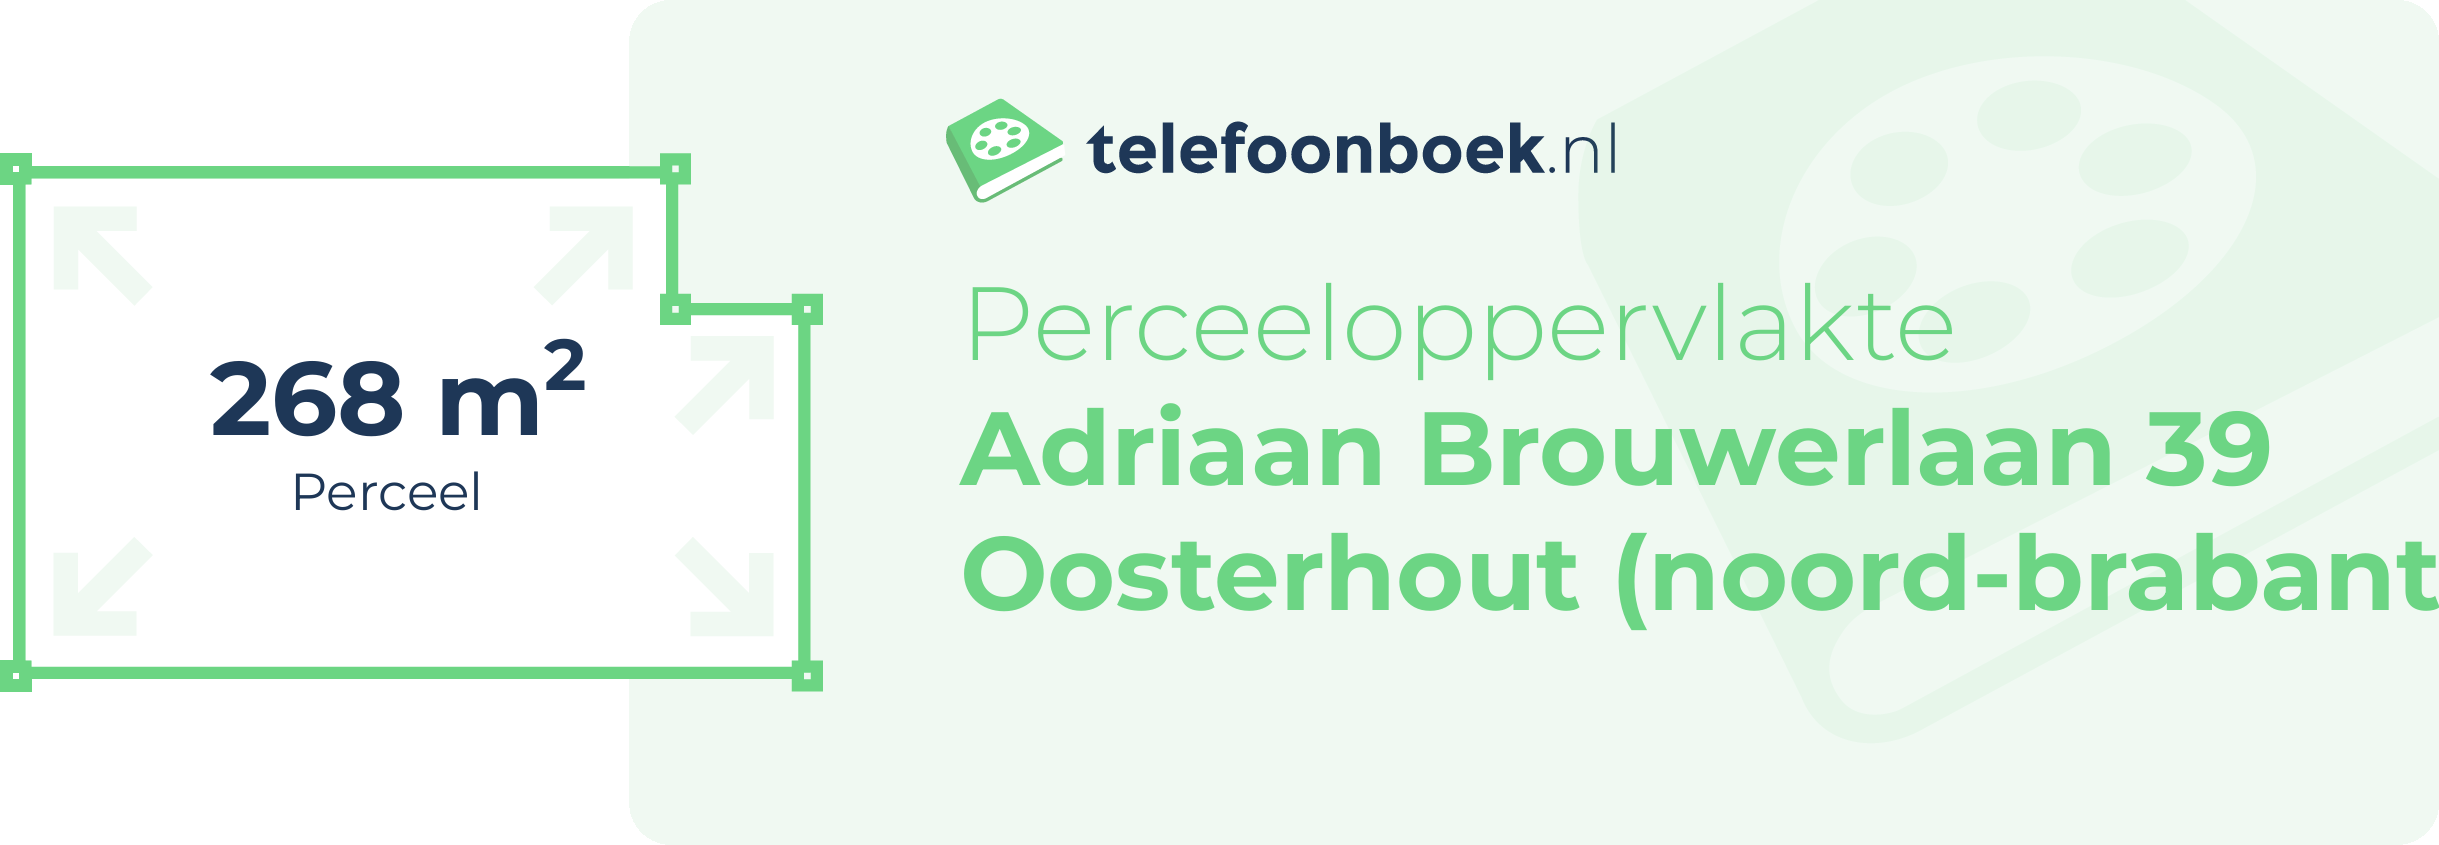 Perceeloppervlakte Adriaan Brouwerlaan 39 Oosterhout (Noord-Brabant)